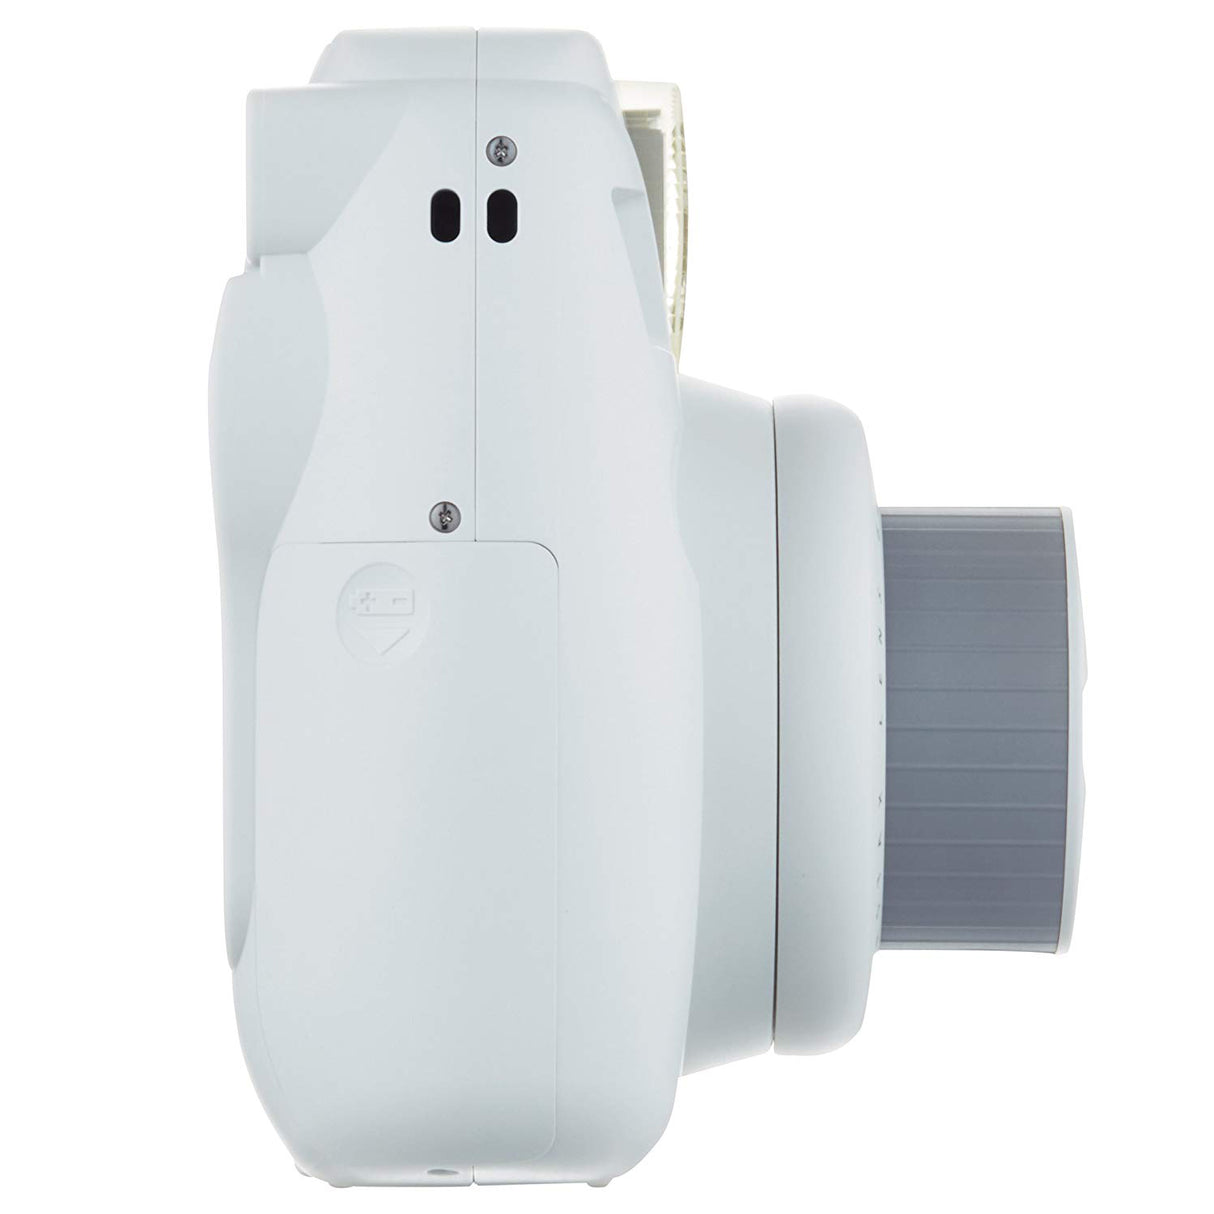 Fujifilm Instax Mini 9 Instant Camera Smokey White